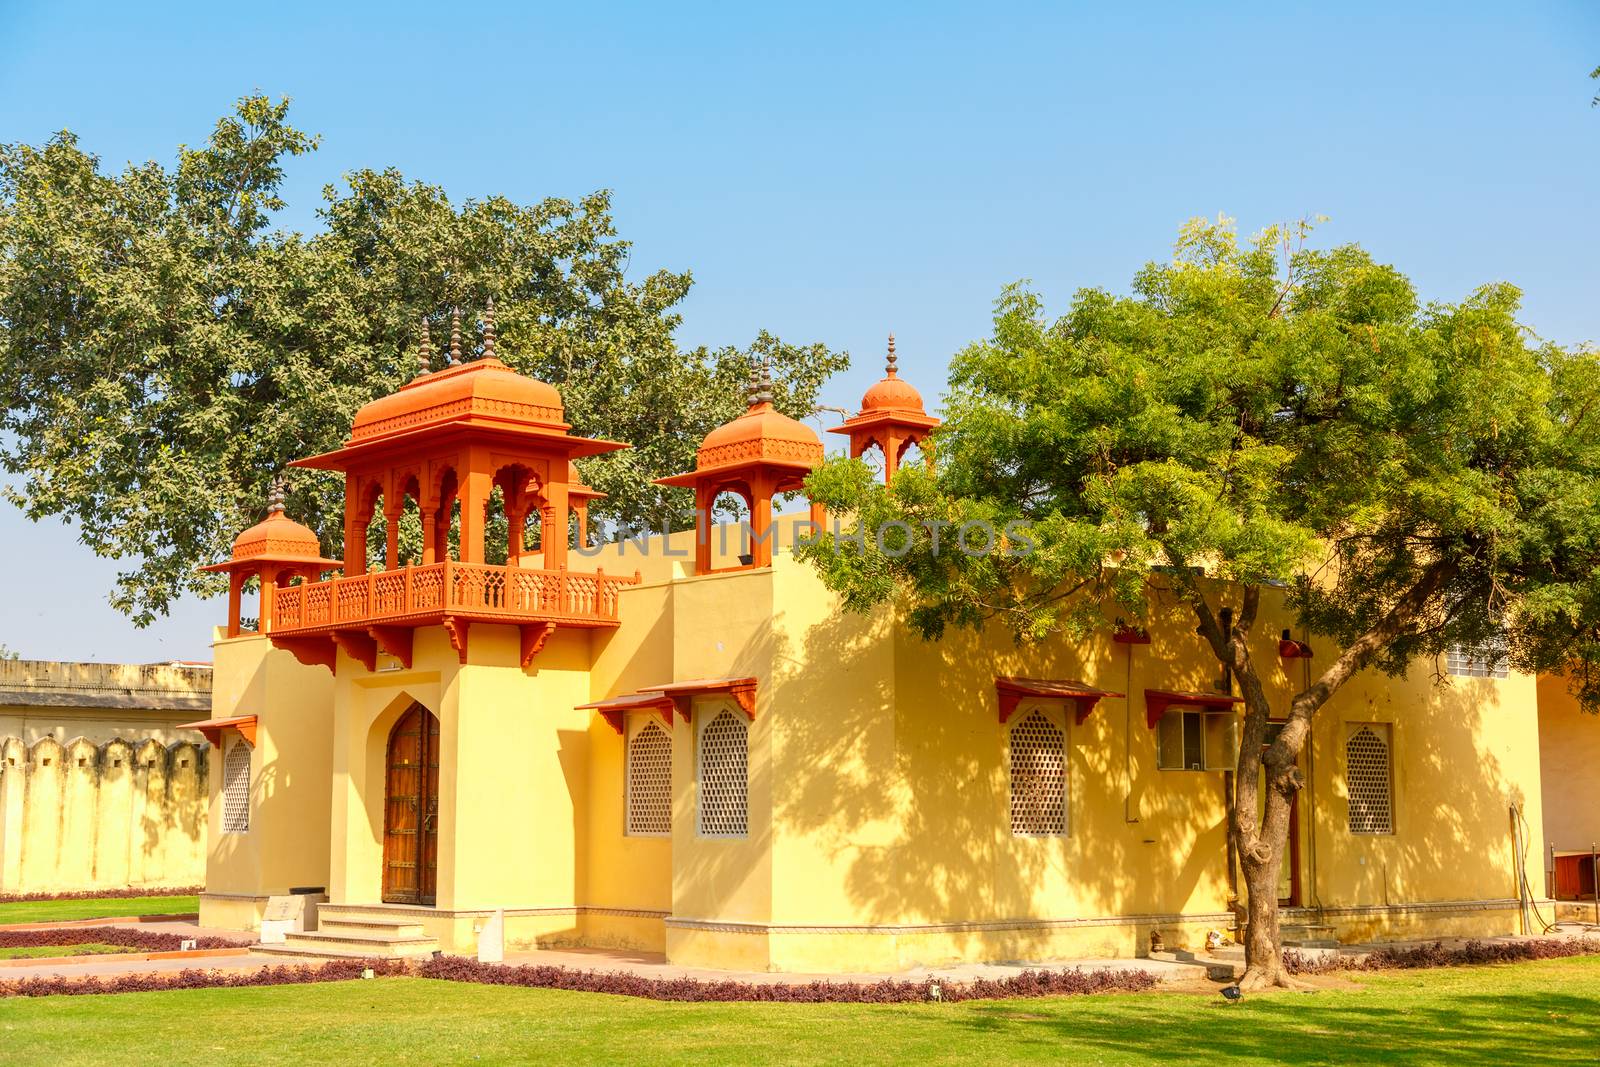 House in Jantar Mantar astronomy garden, Jaipur, India